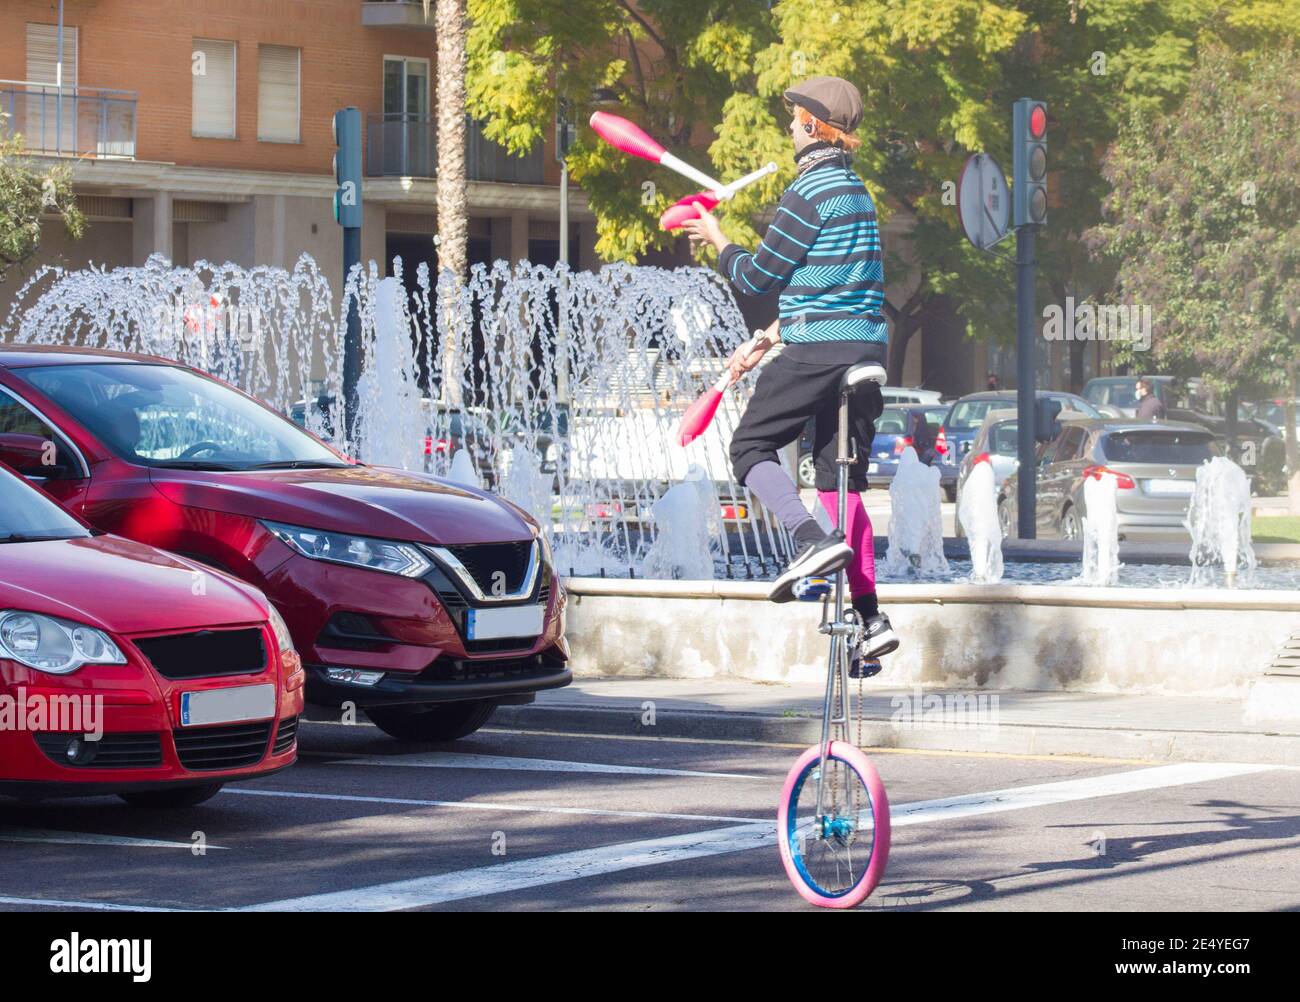 VALENCIA, SPANIEN - 15. Jan 2021: Ein Puppenspieler-Clown nutzt das rote Licht, um Fahrern auf öffentlichen Straßen eine Jongliershow zu bieten, um sich einen Livin zu verdienen Stockfoto